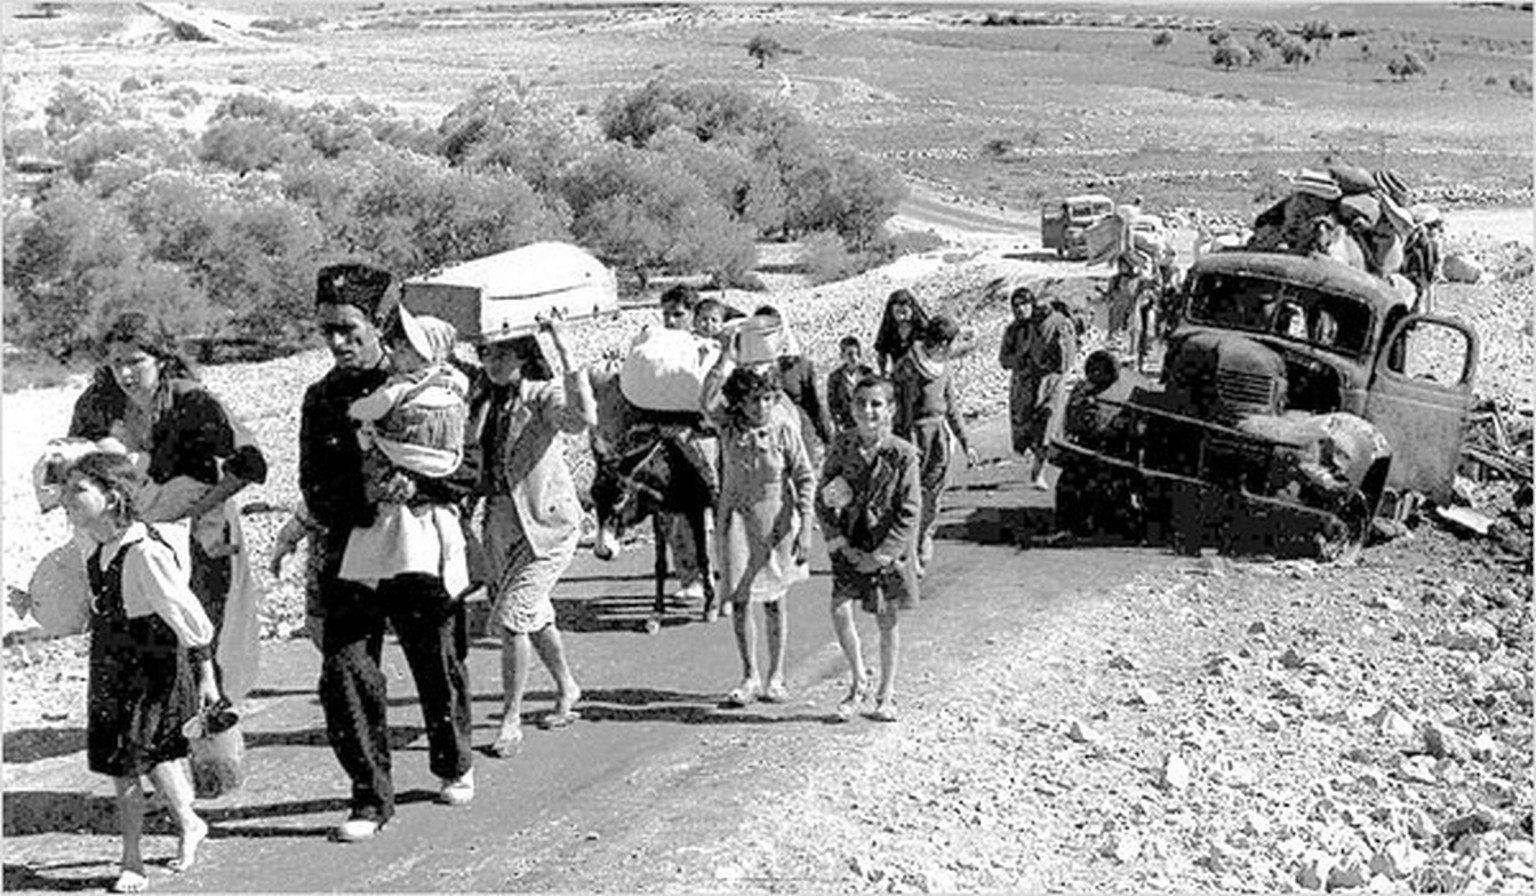 Palästinensische Flüchtlinge verlassen Galiläa, Oktober 1948
https://de.wikipedia.org/wiki/Nakba#/media/Datei:Palestinian_refugees.jpg